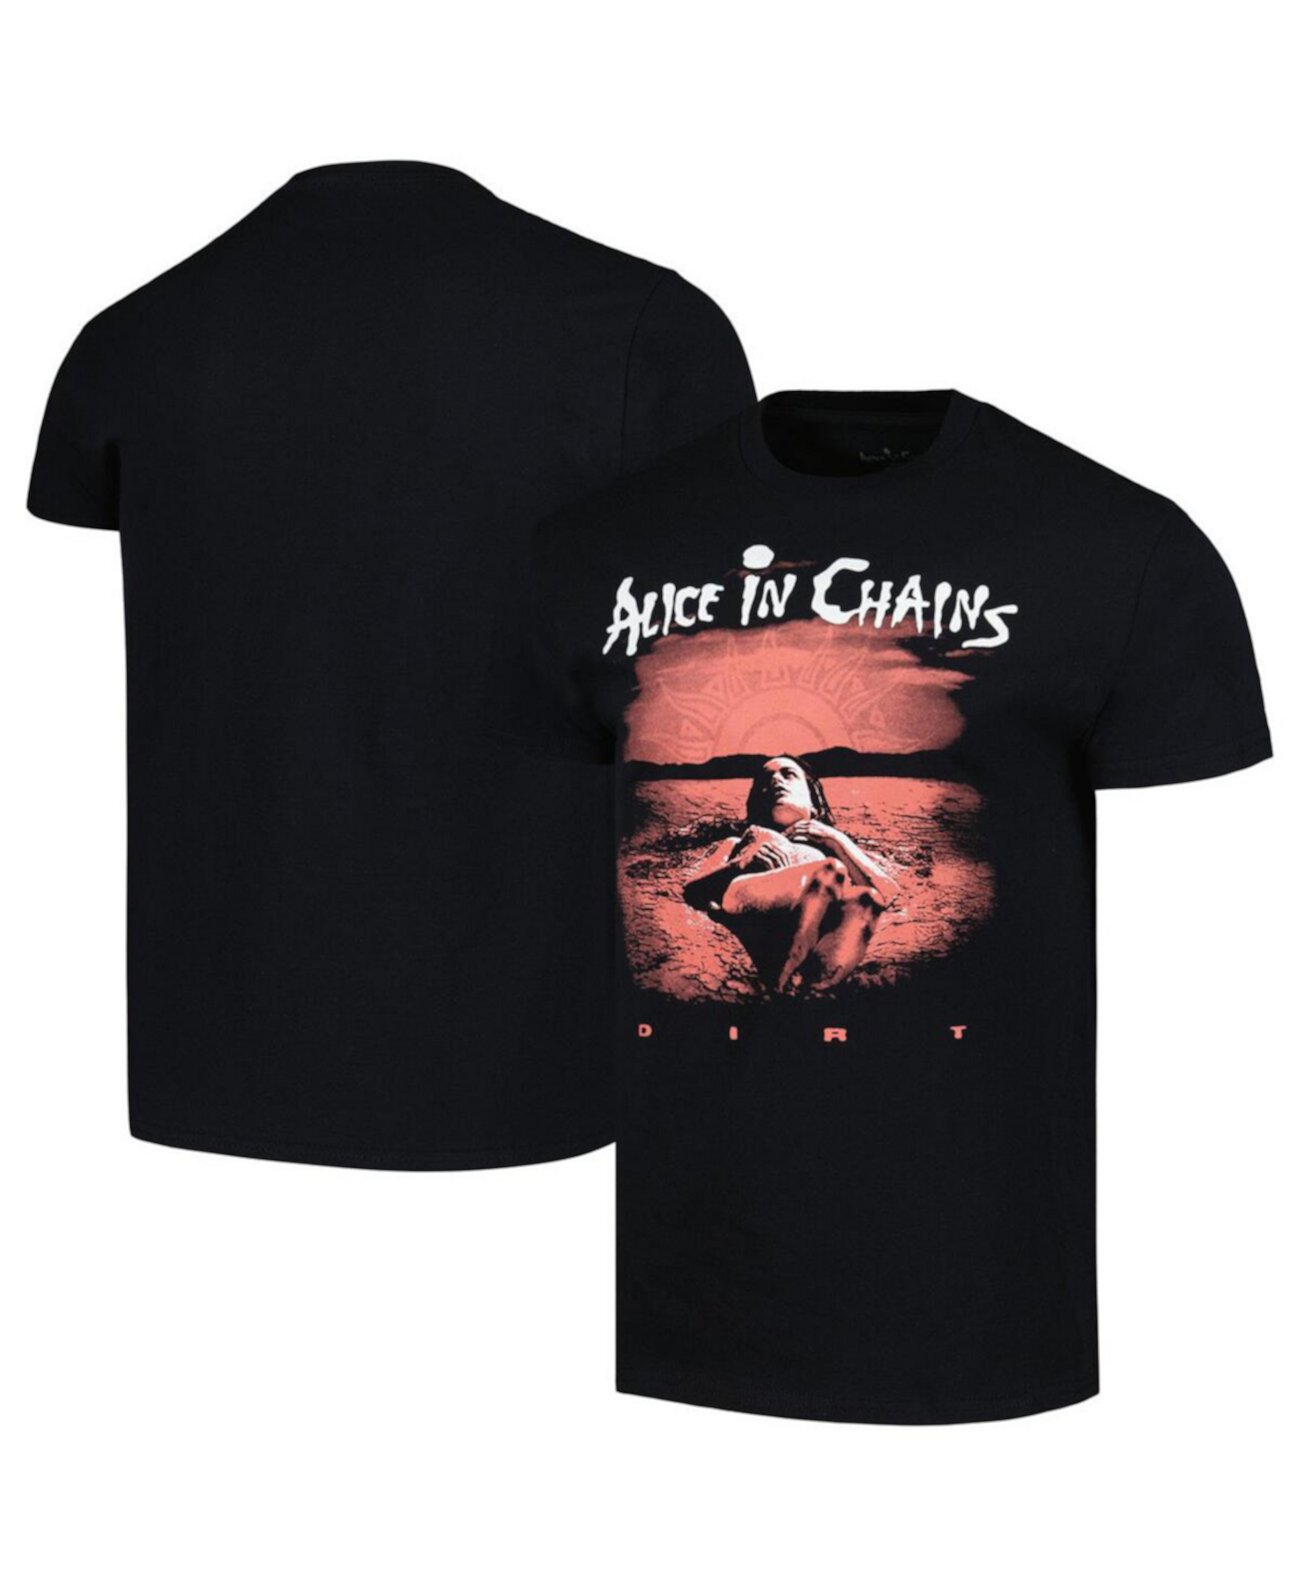 Мужская футболка Alice in Chains Dirt от Manhead Merch Manhead Merch